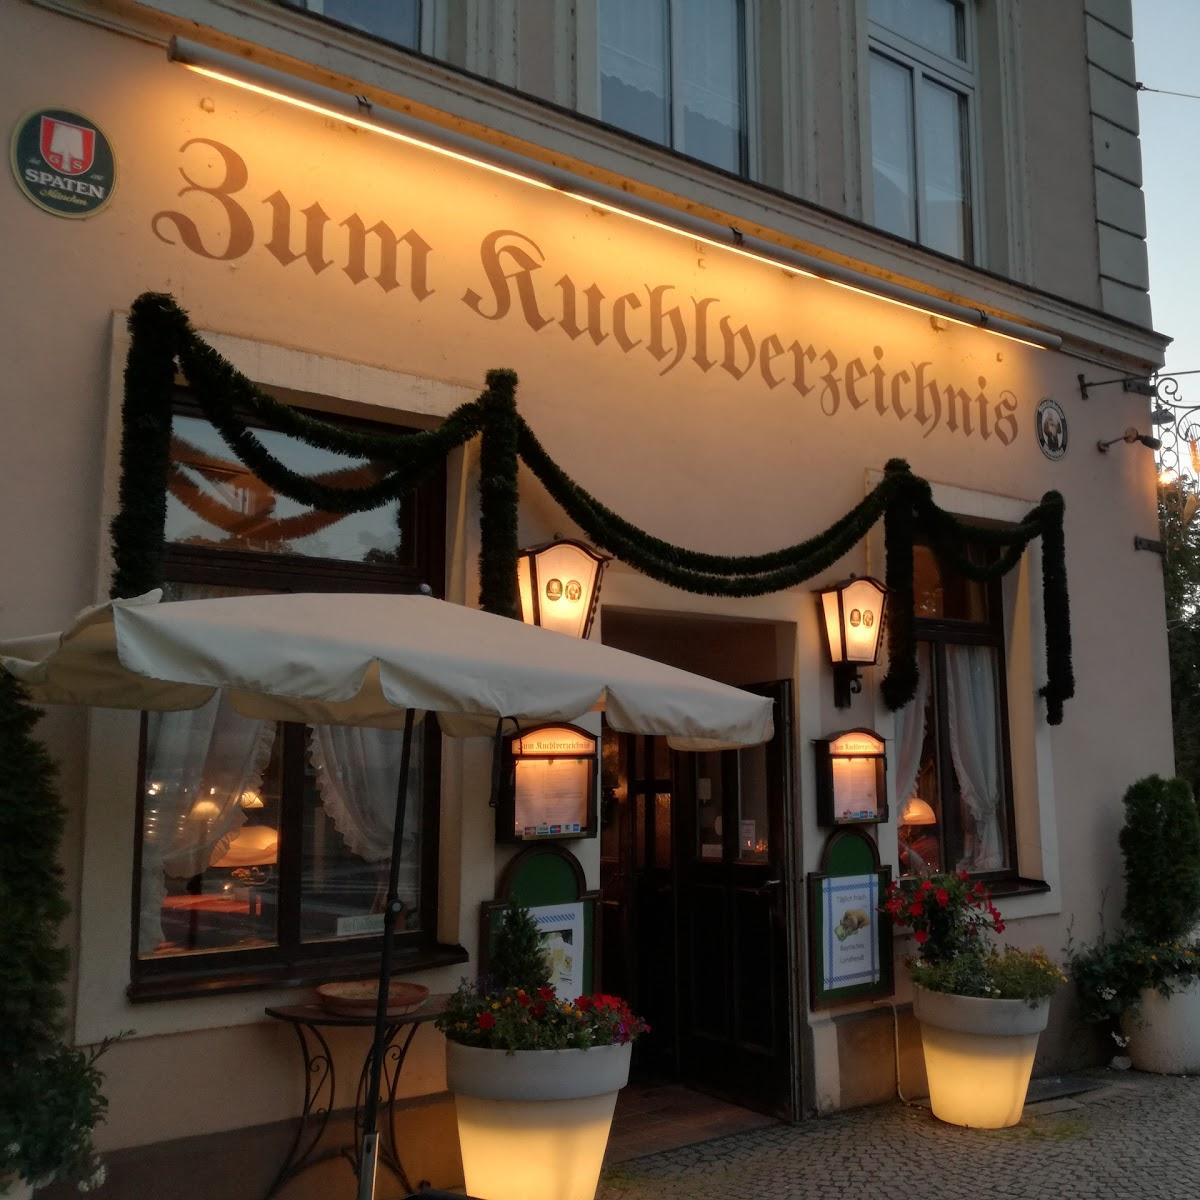 Restaurant "Kuchlverzeichnis" in München